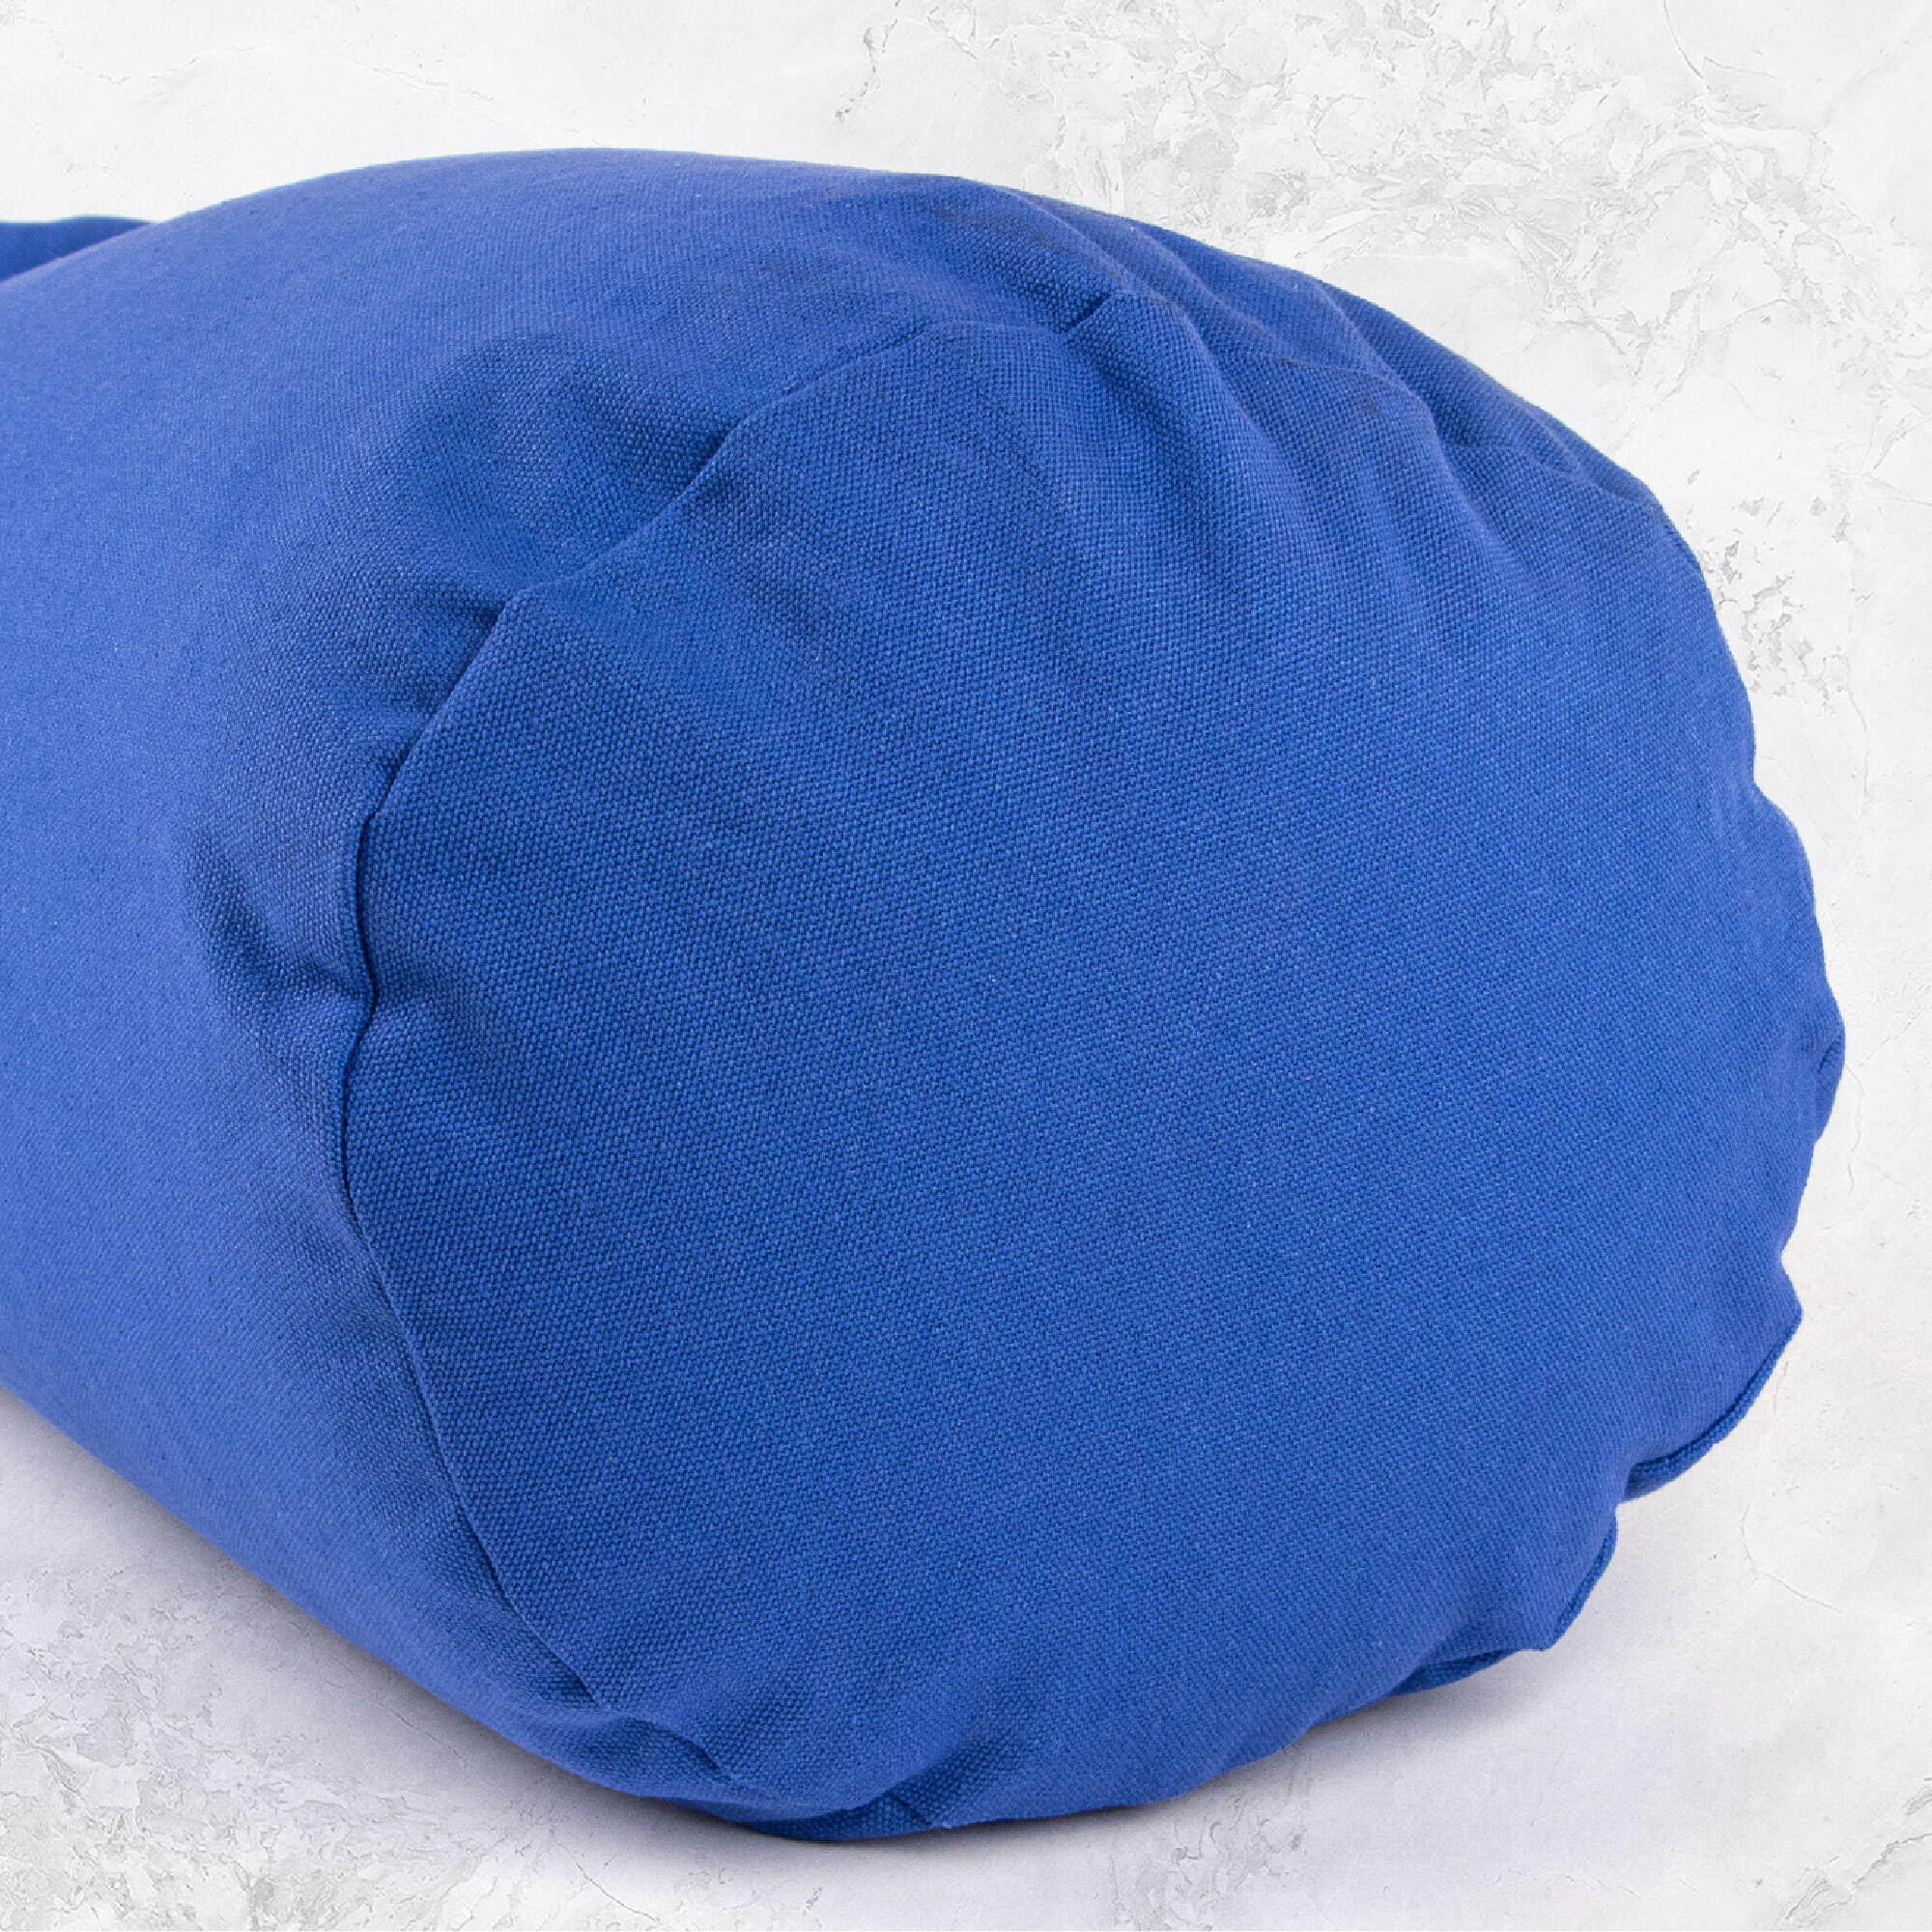 Support Bolster Pillow - Blue 5/7